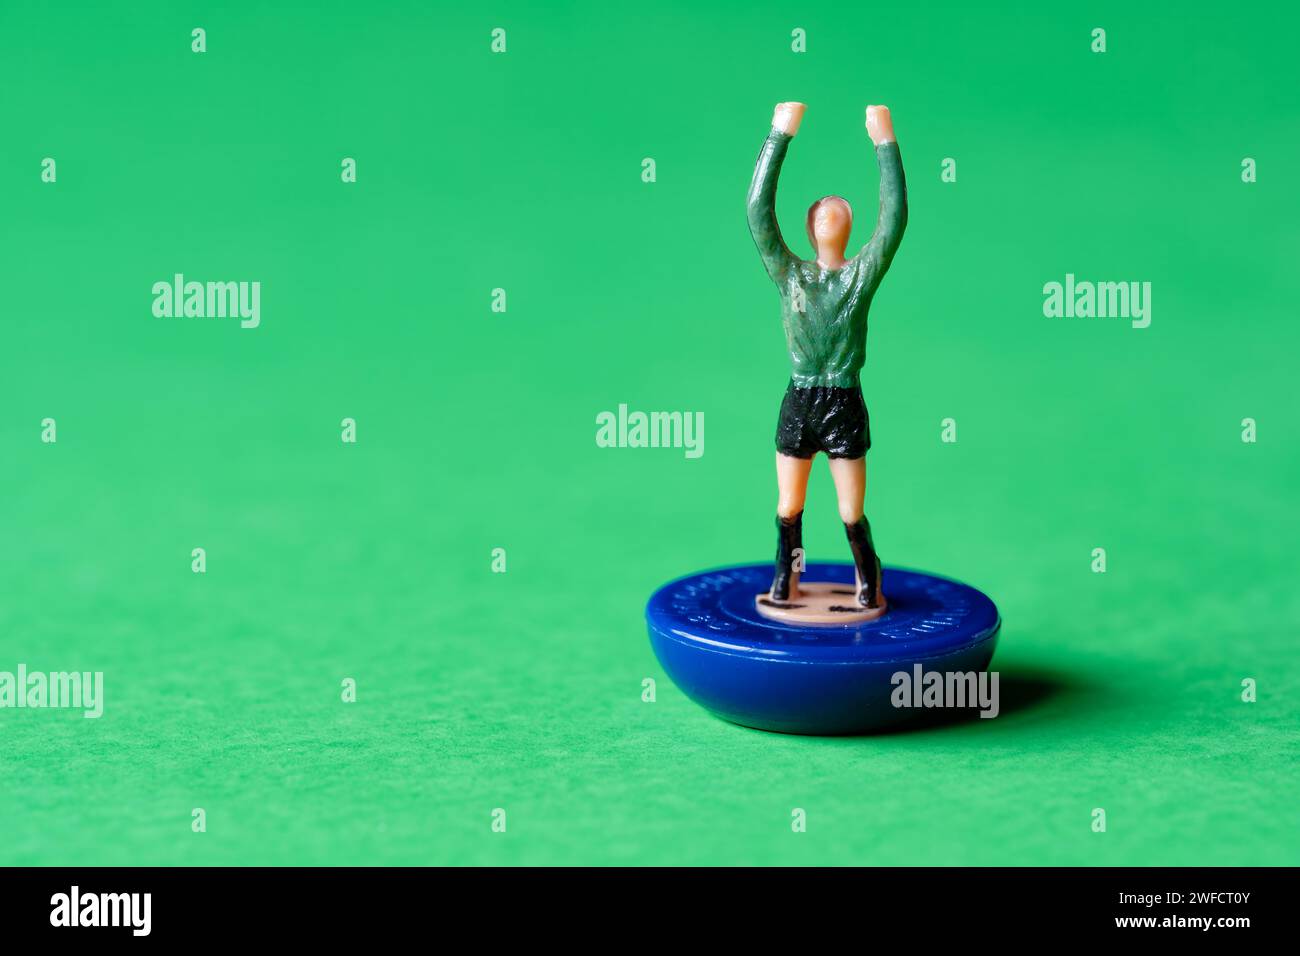 Une seule figurine de gardien de but miniature Subbuteo peinte dans une chemise verte et un short noir. Subbuteo est un jeu de football de table populaire Banque D'Images